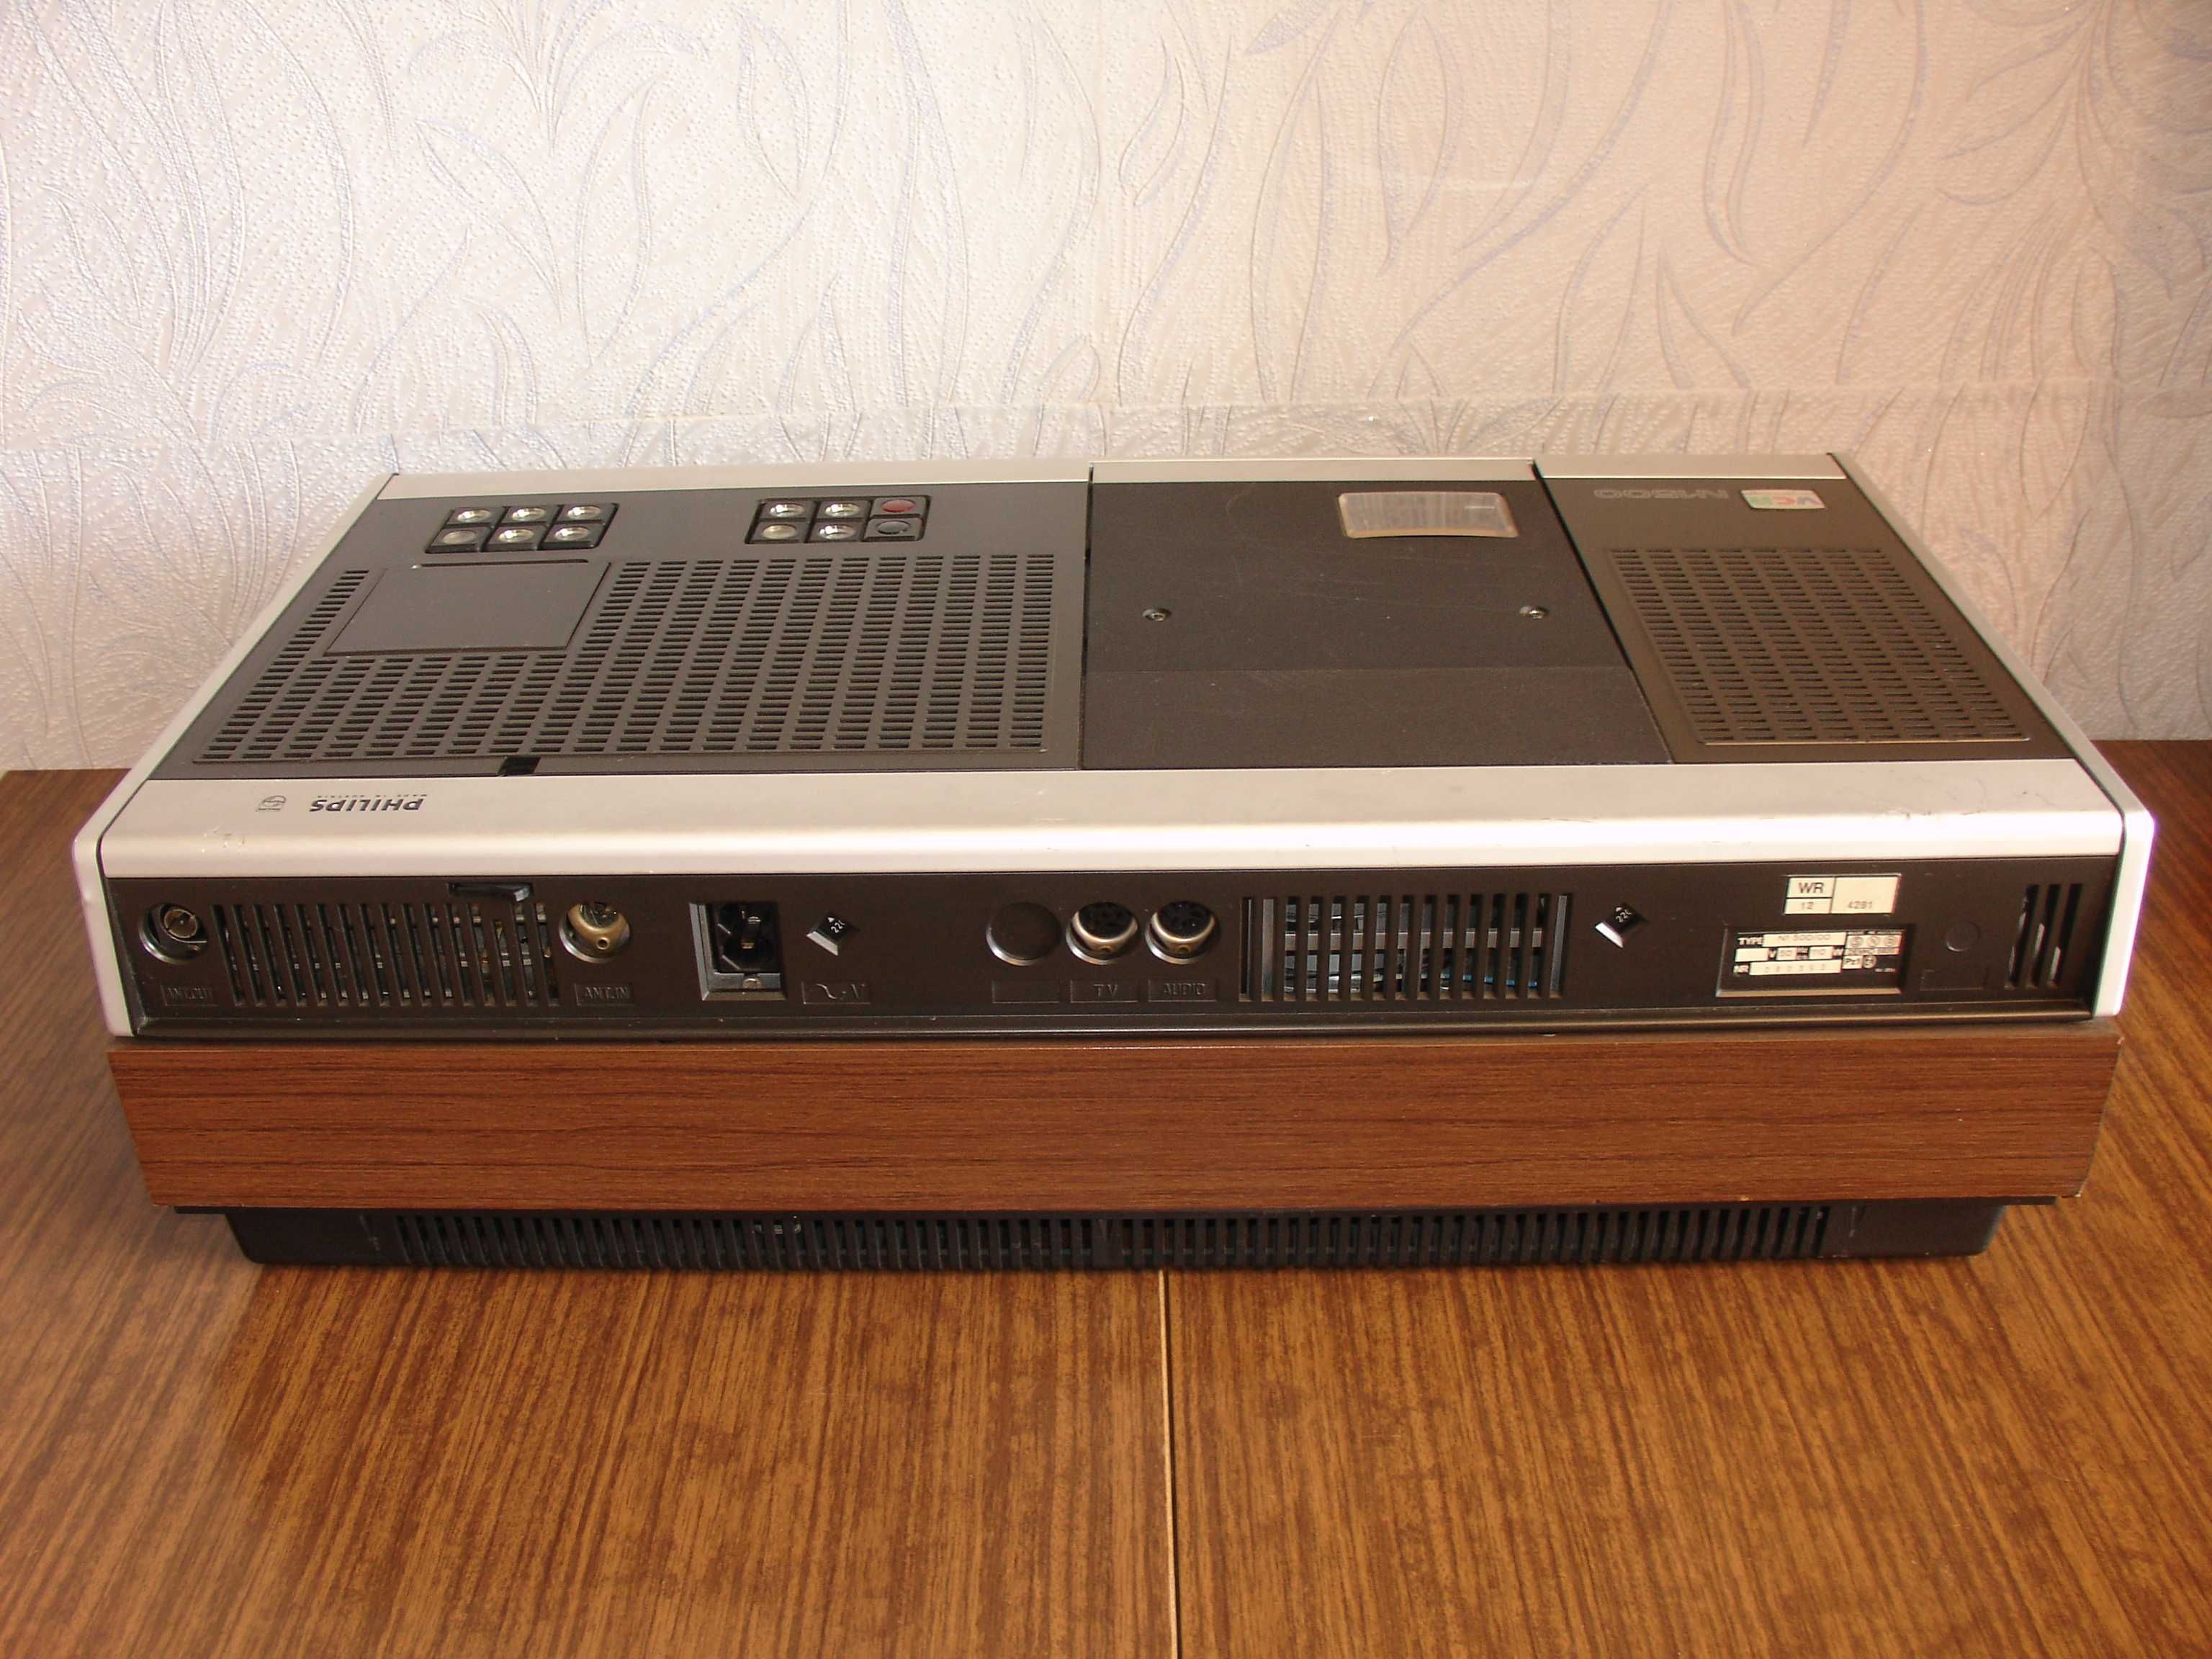 Видеомагнитофон PHILIPS N1500 VCR /Austria/1971г.Video cassette VC-45